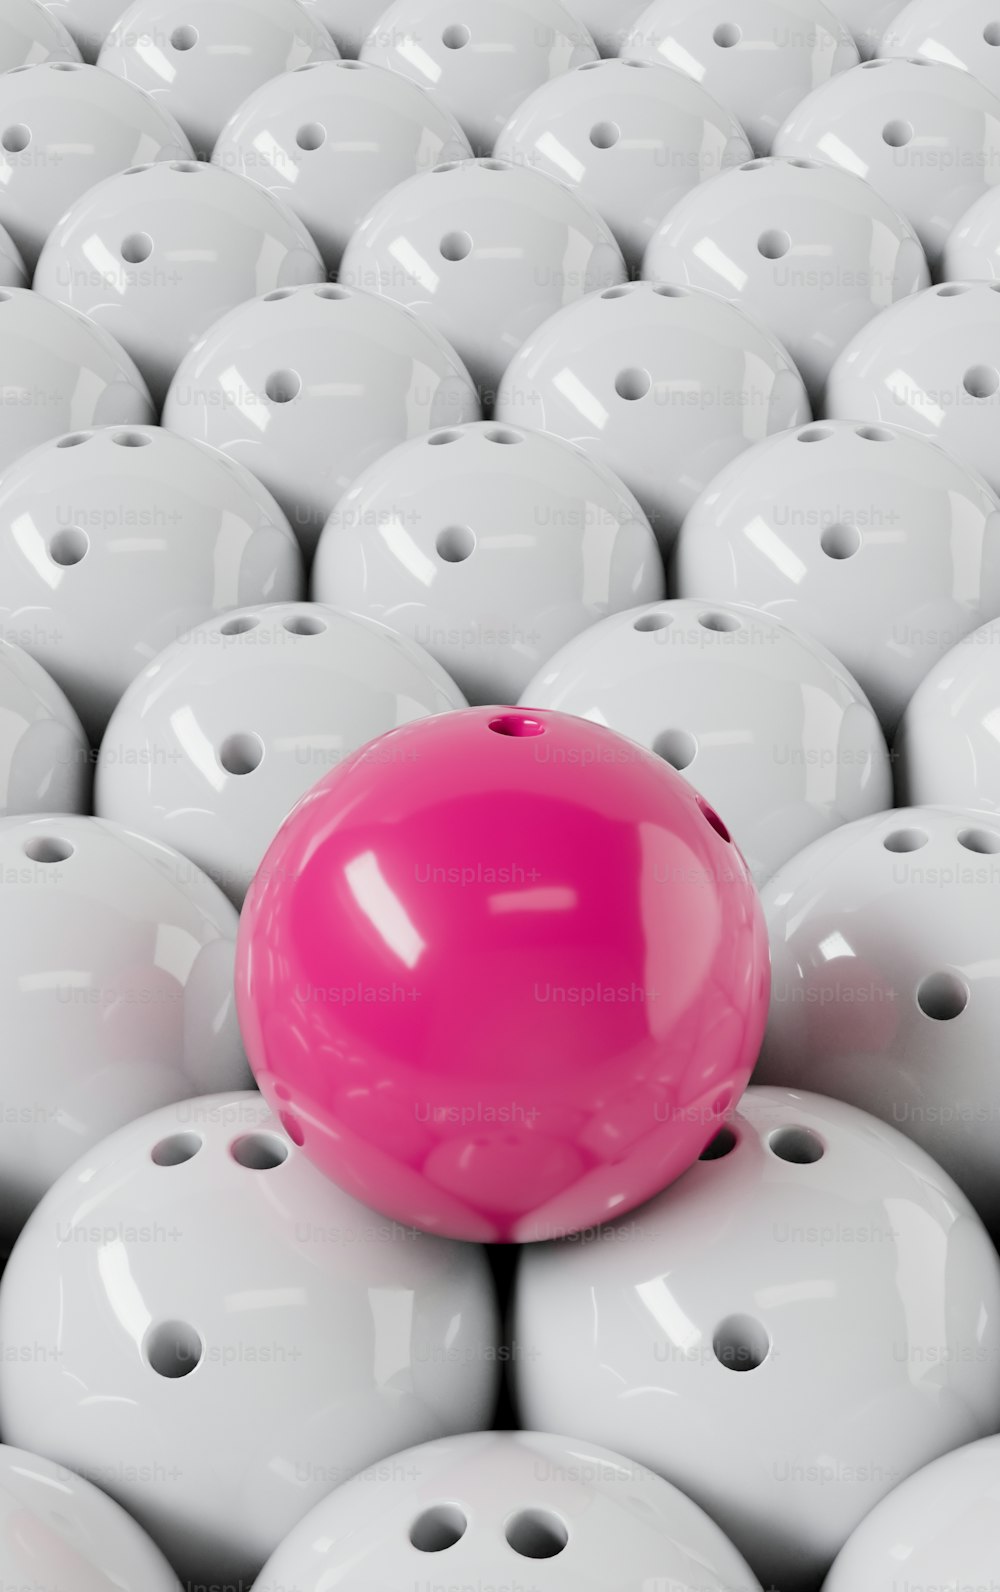 큰 흰색 공 위에 앉아있는 분홍색 공